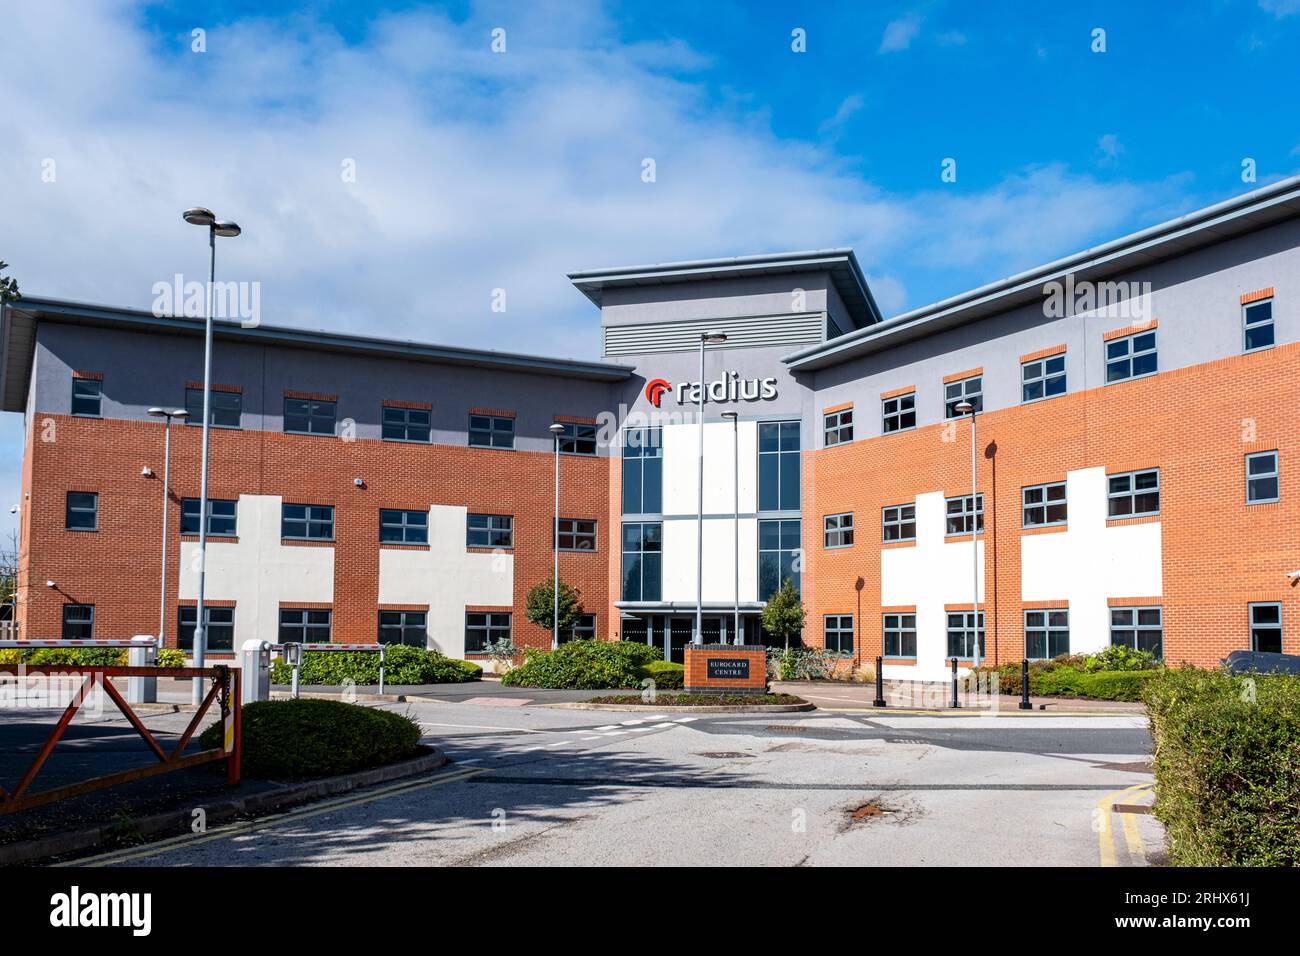 Radius Eurocard Centre in Crewe Cheshire UK Stockfoto